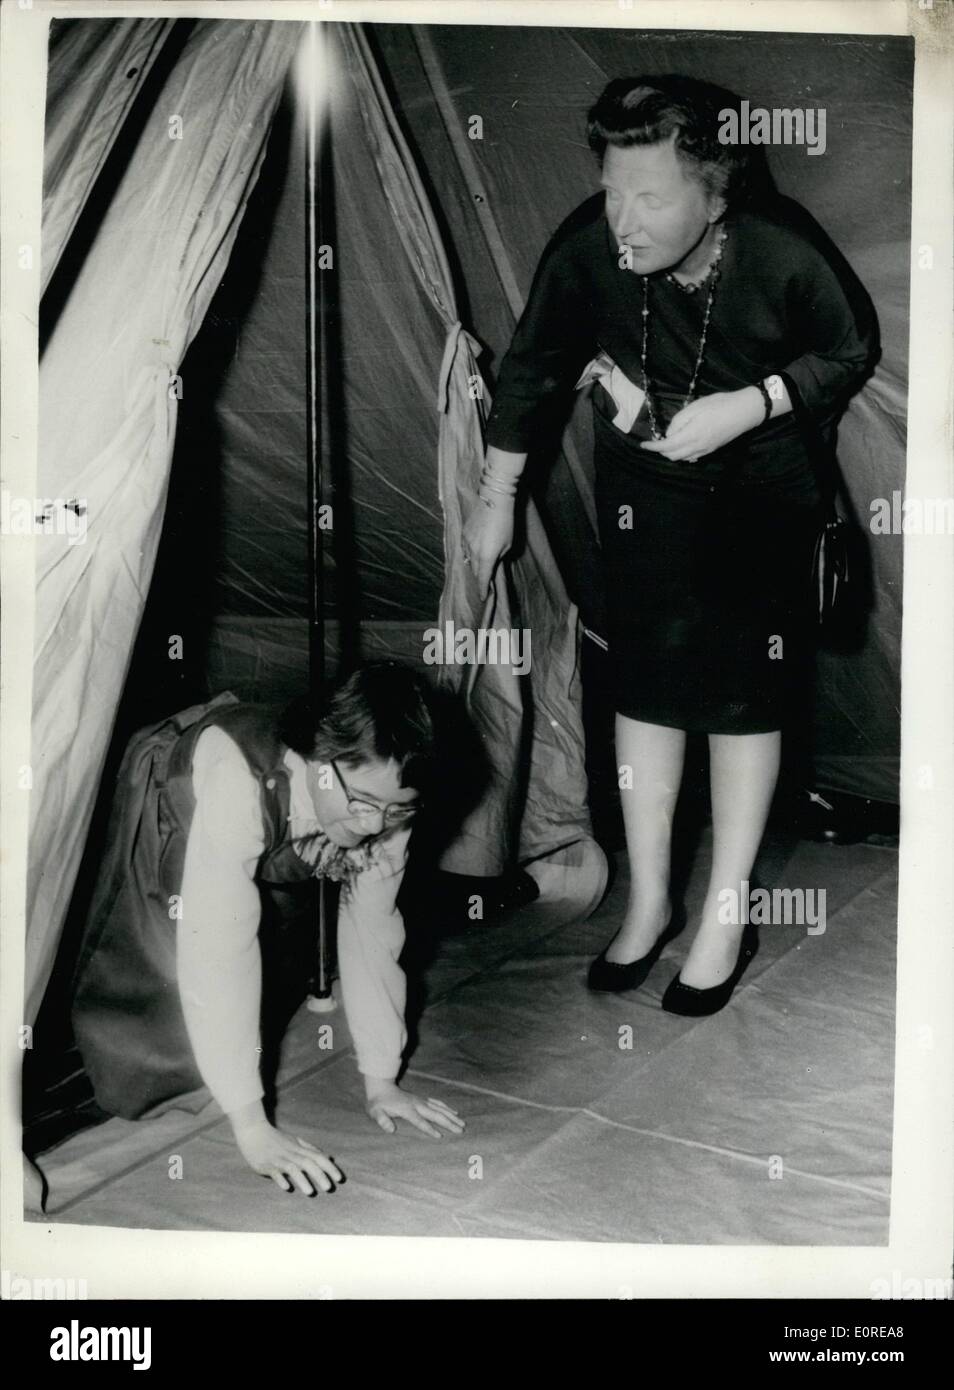 19. Februar 1959 - 19.2.59 Prinzessin Marijke prüft ihr Zelt-Geschenk. 12. Geburtstagsgeschenk - eine Abordnung der Kommunikation Truppen des niederländischen Heeres, ging gestern in Soestdijk Palast, 12. Geburtstagsgeschenk Prinzessin Marijke, präsentieren die Doppel-roofed Zelt war. Keystone-Fotoshows: Prinzessin Marijke kriecht aus dem Zelt, das in einem der Palasträume aufgestellt war, nach der wie ihre Mutter, die Königin Juliana der Niederlande auf eine blickt Besichtigung. Stockfoto